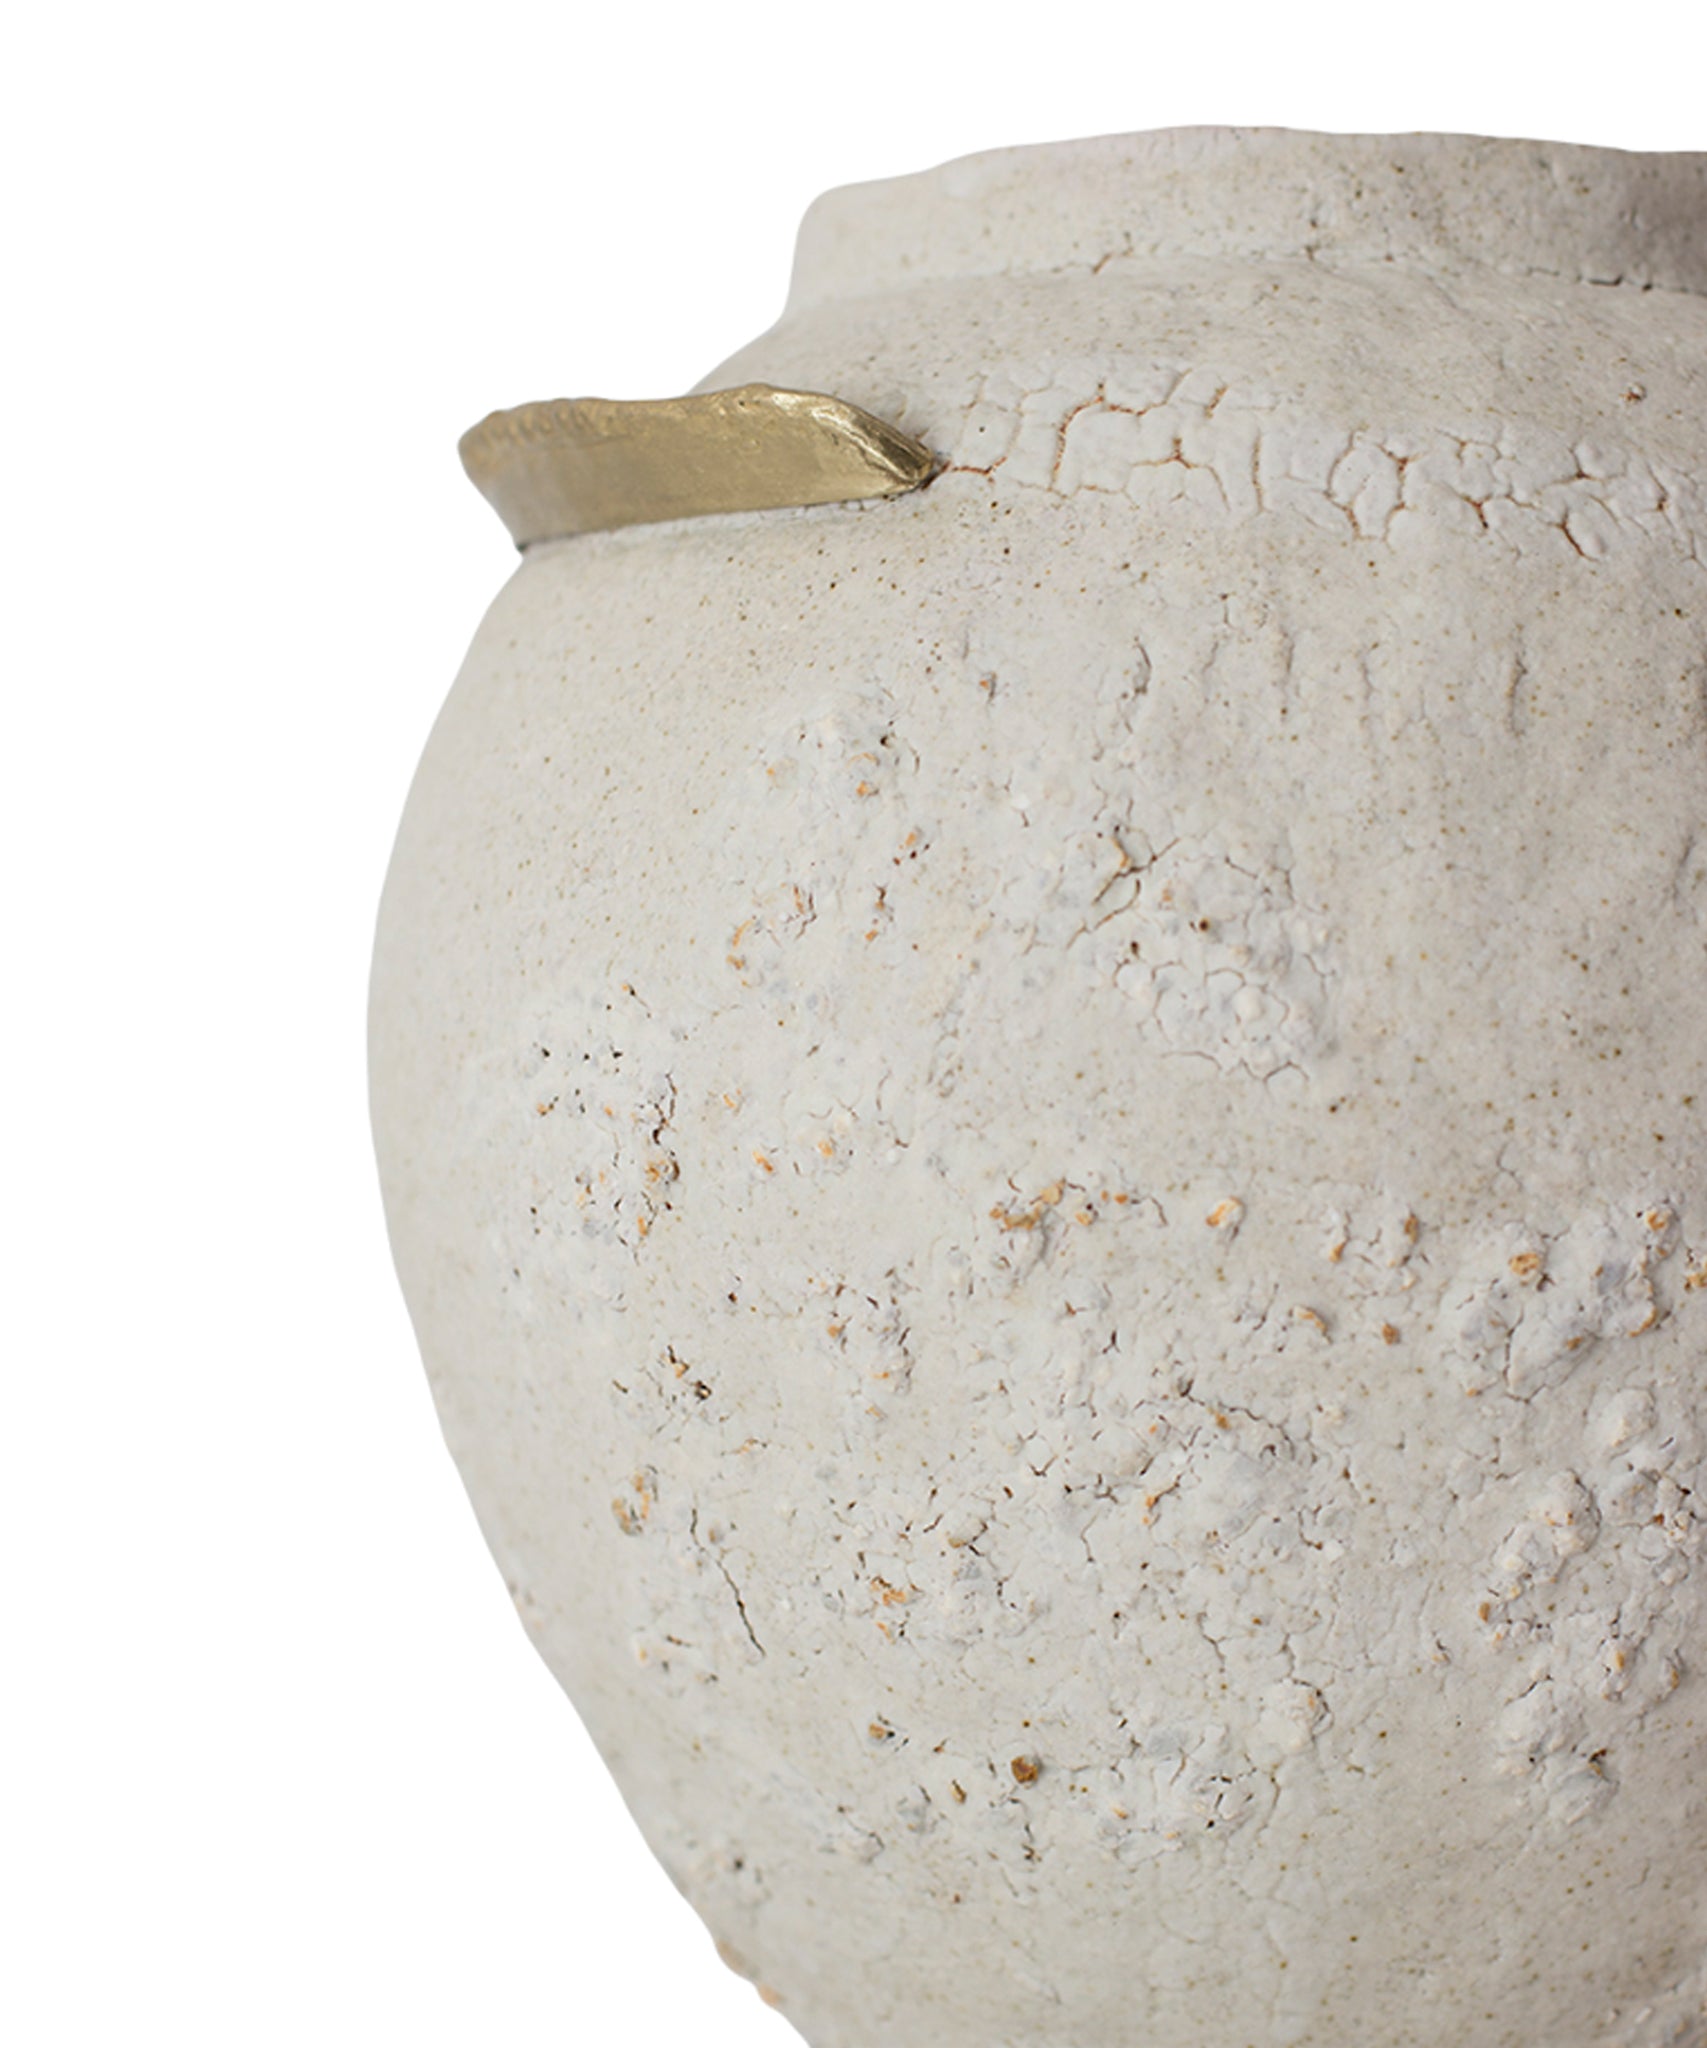 Isolated N.10 Stoneware Vase